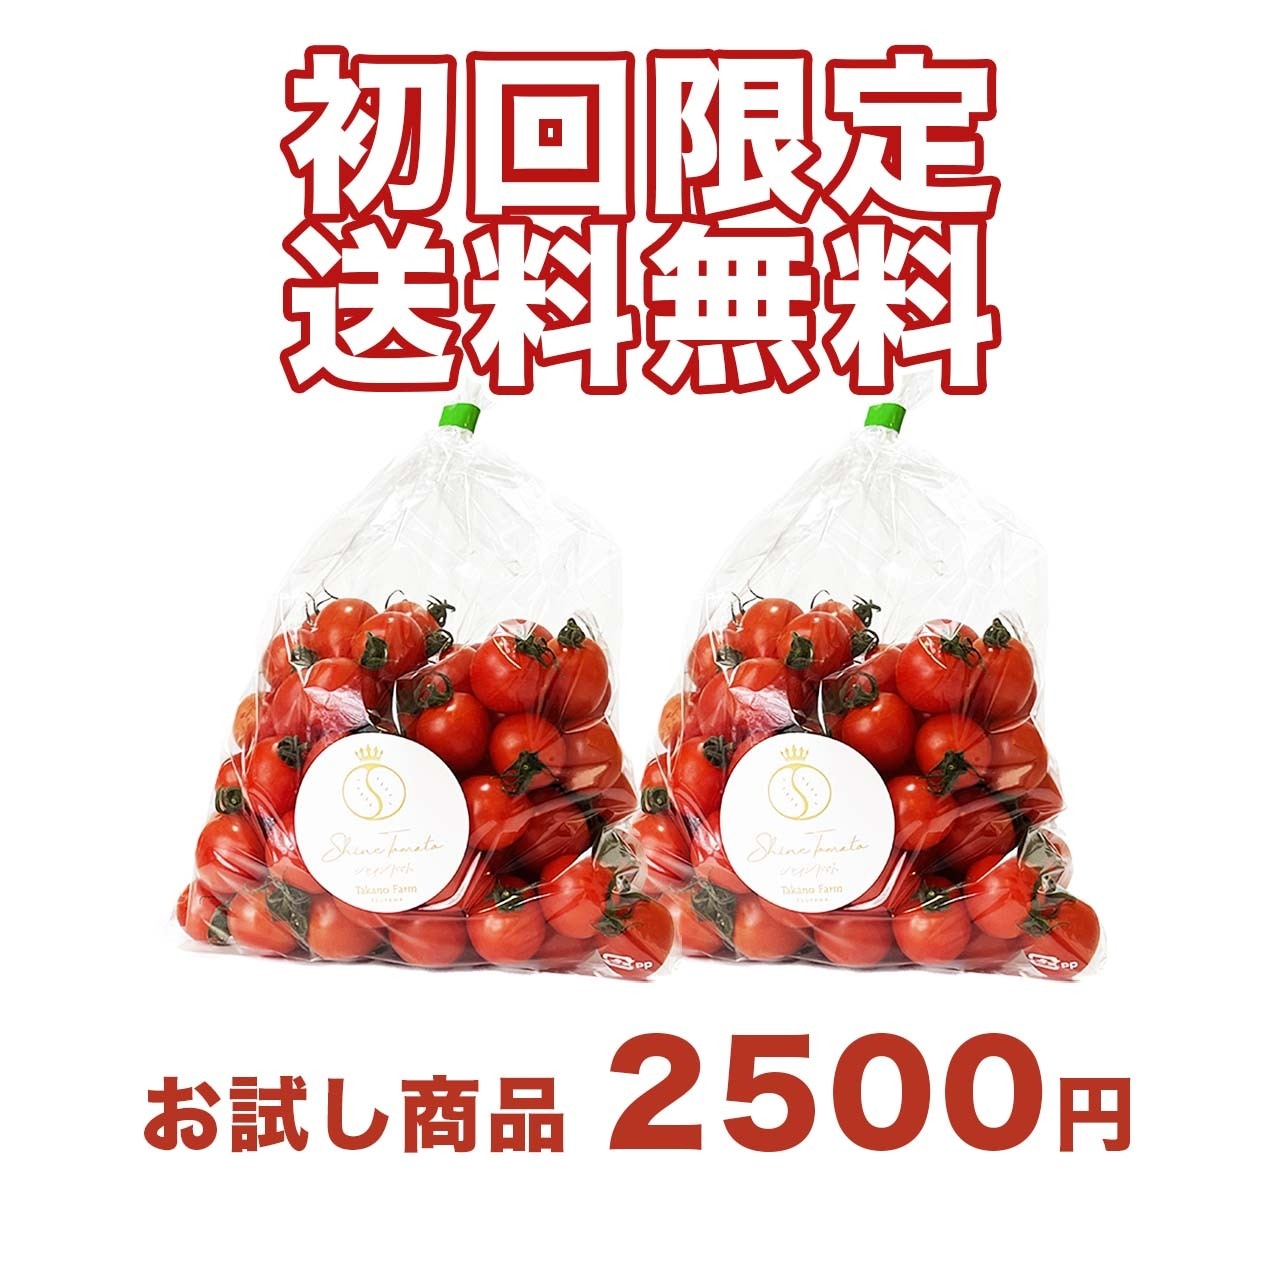 【初回限定】送料無料のお試しシャイントマト600g（300g×2パック）津山産【農園直送】